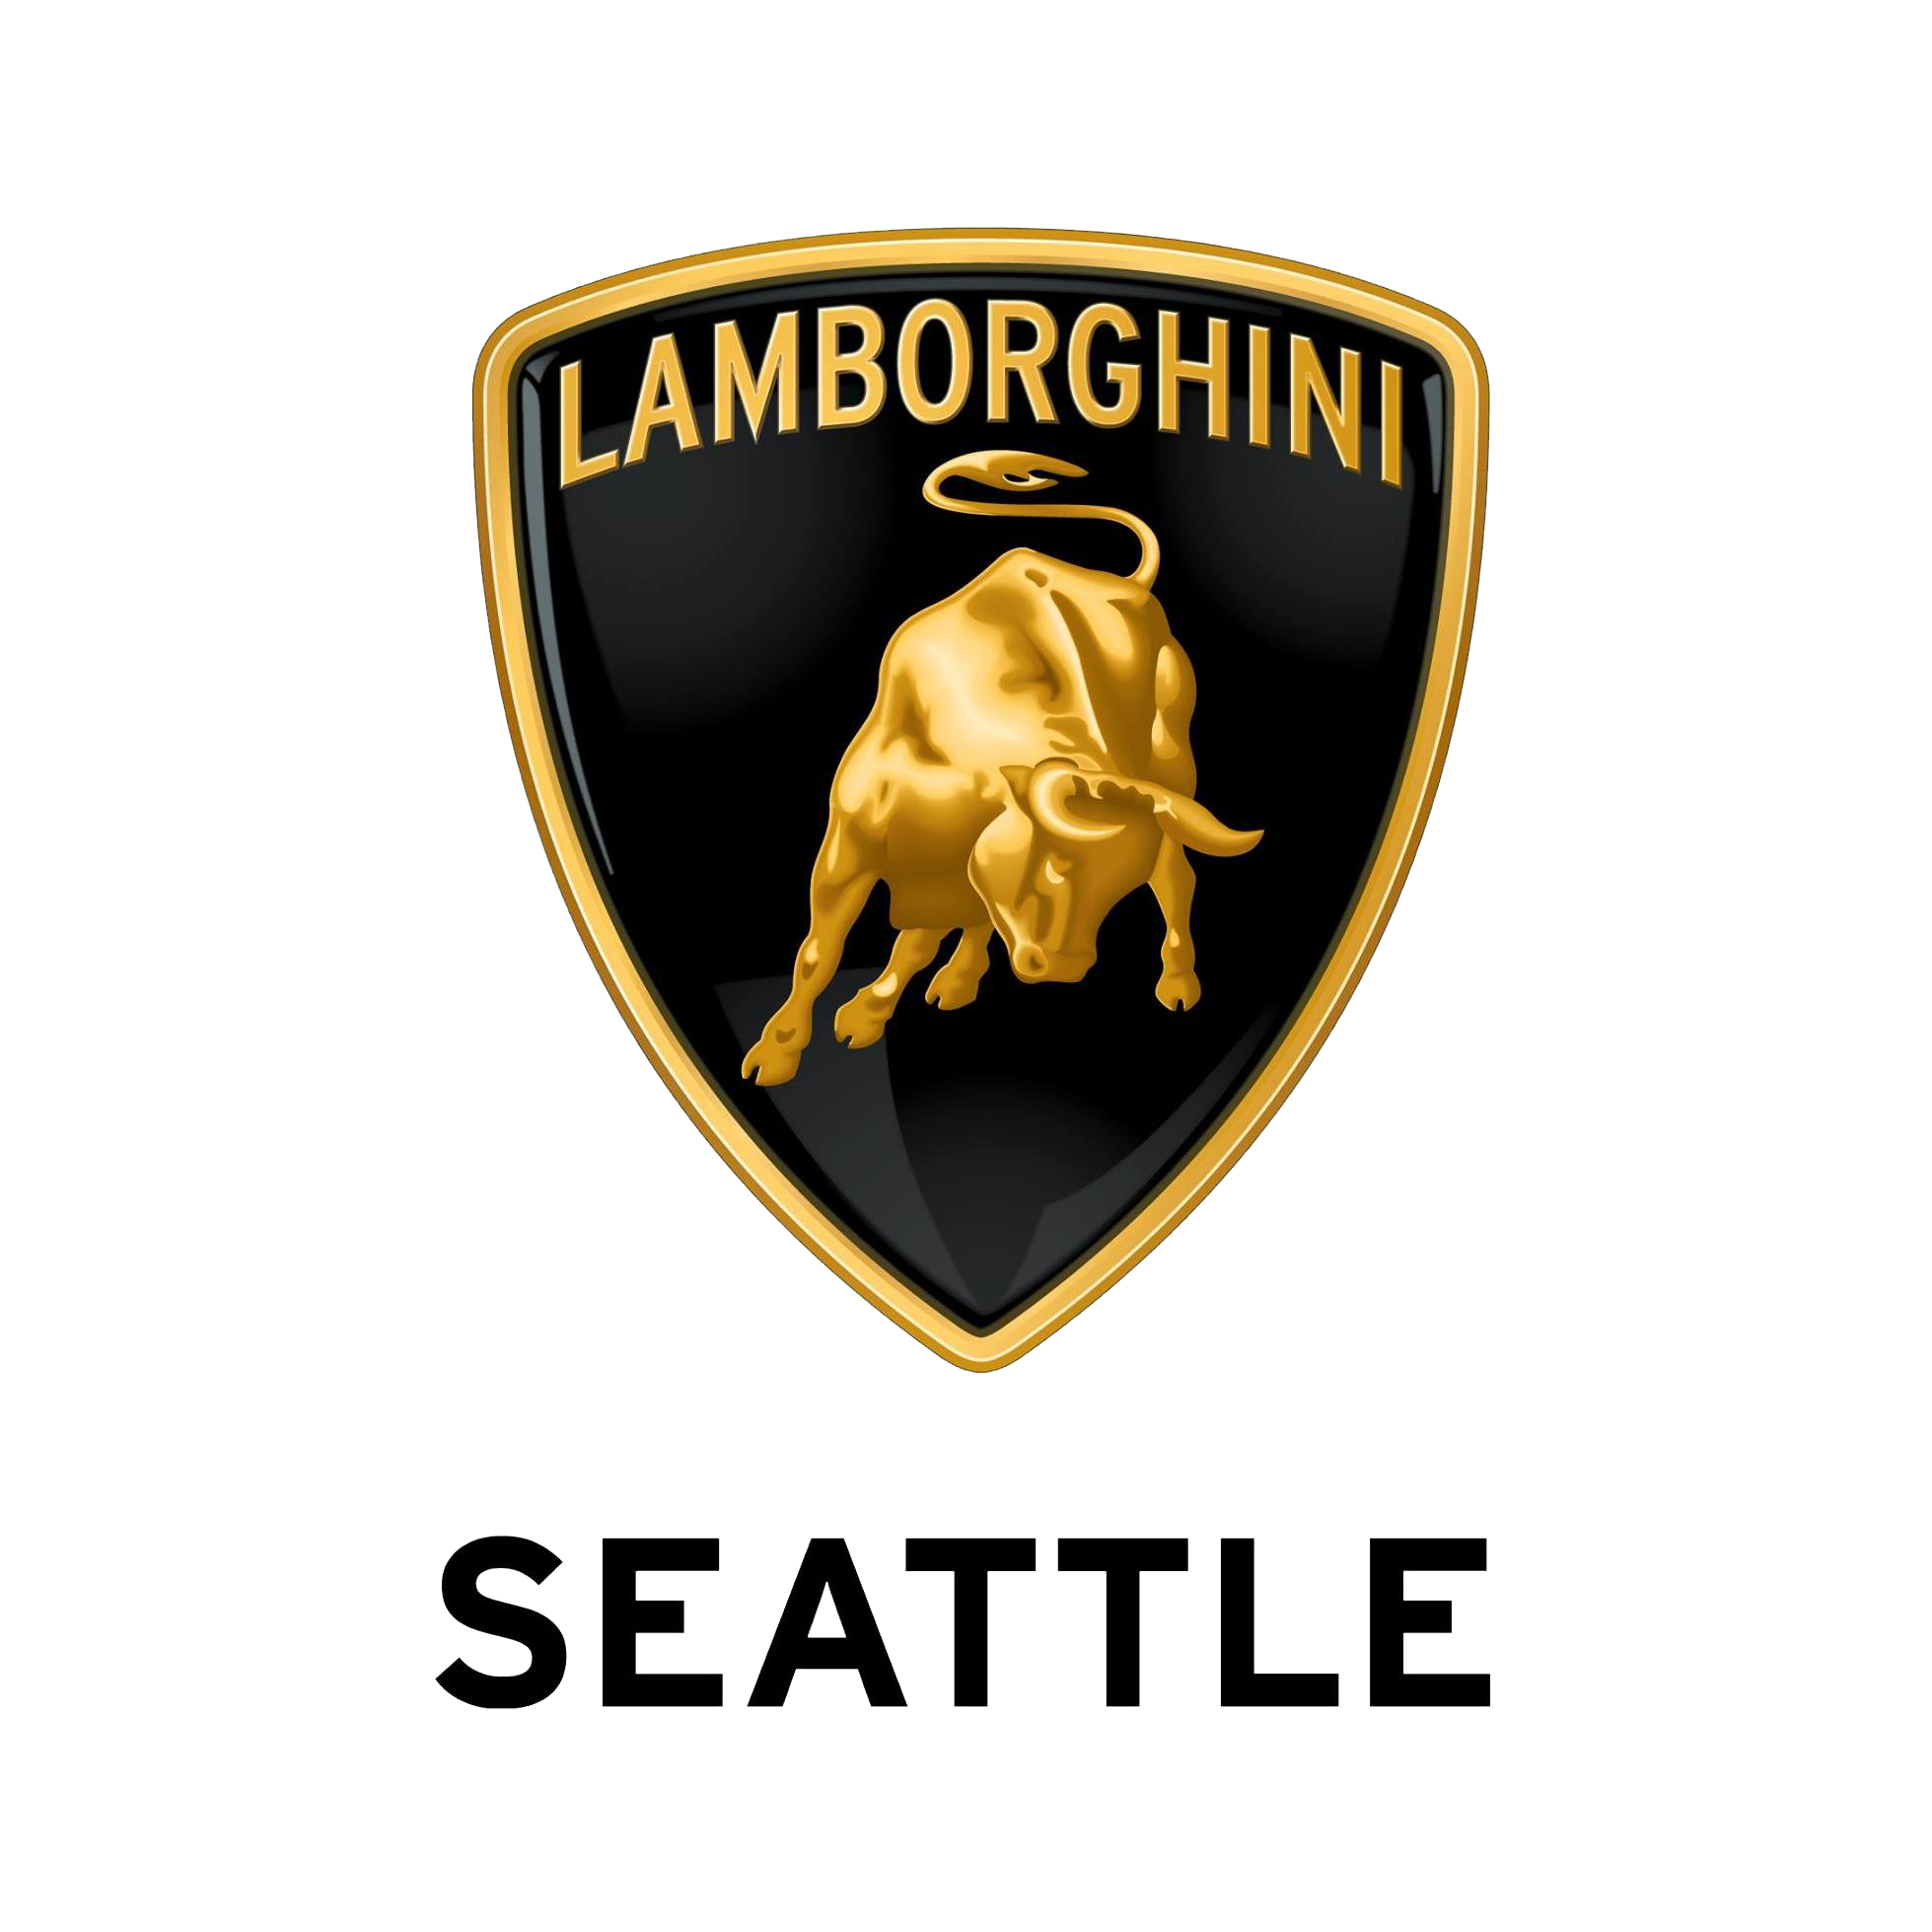 Lamborghini_Seattle_logo_transparent.png